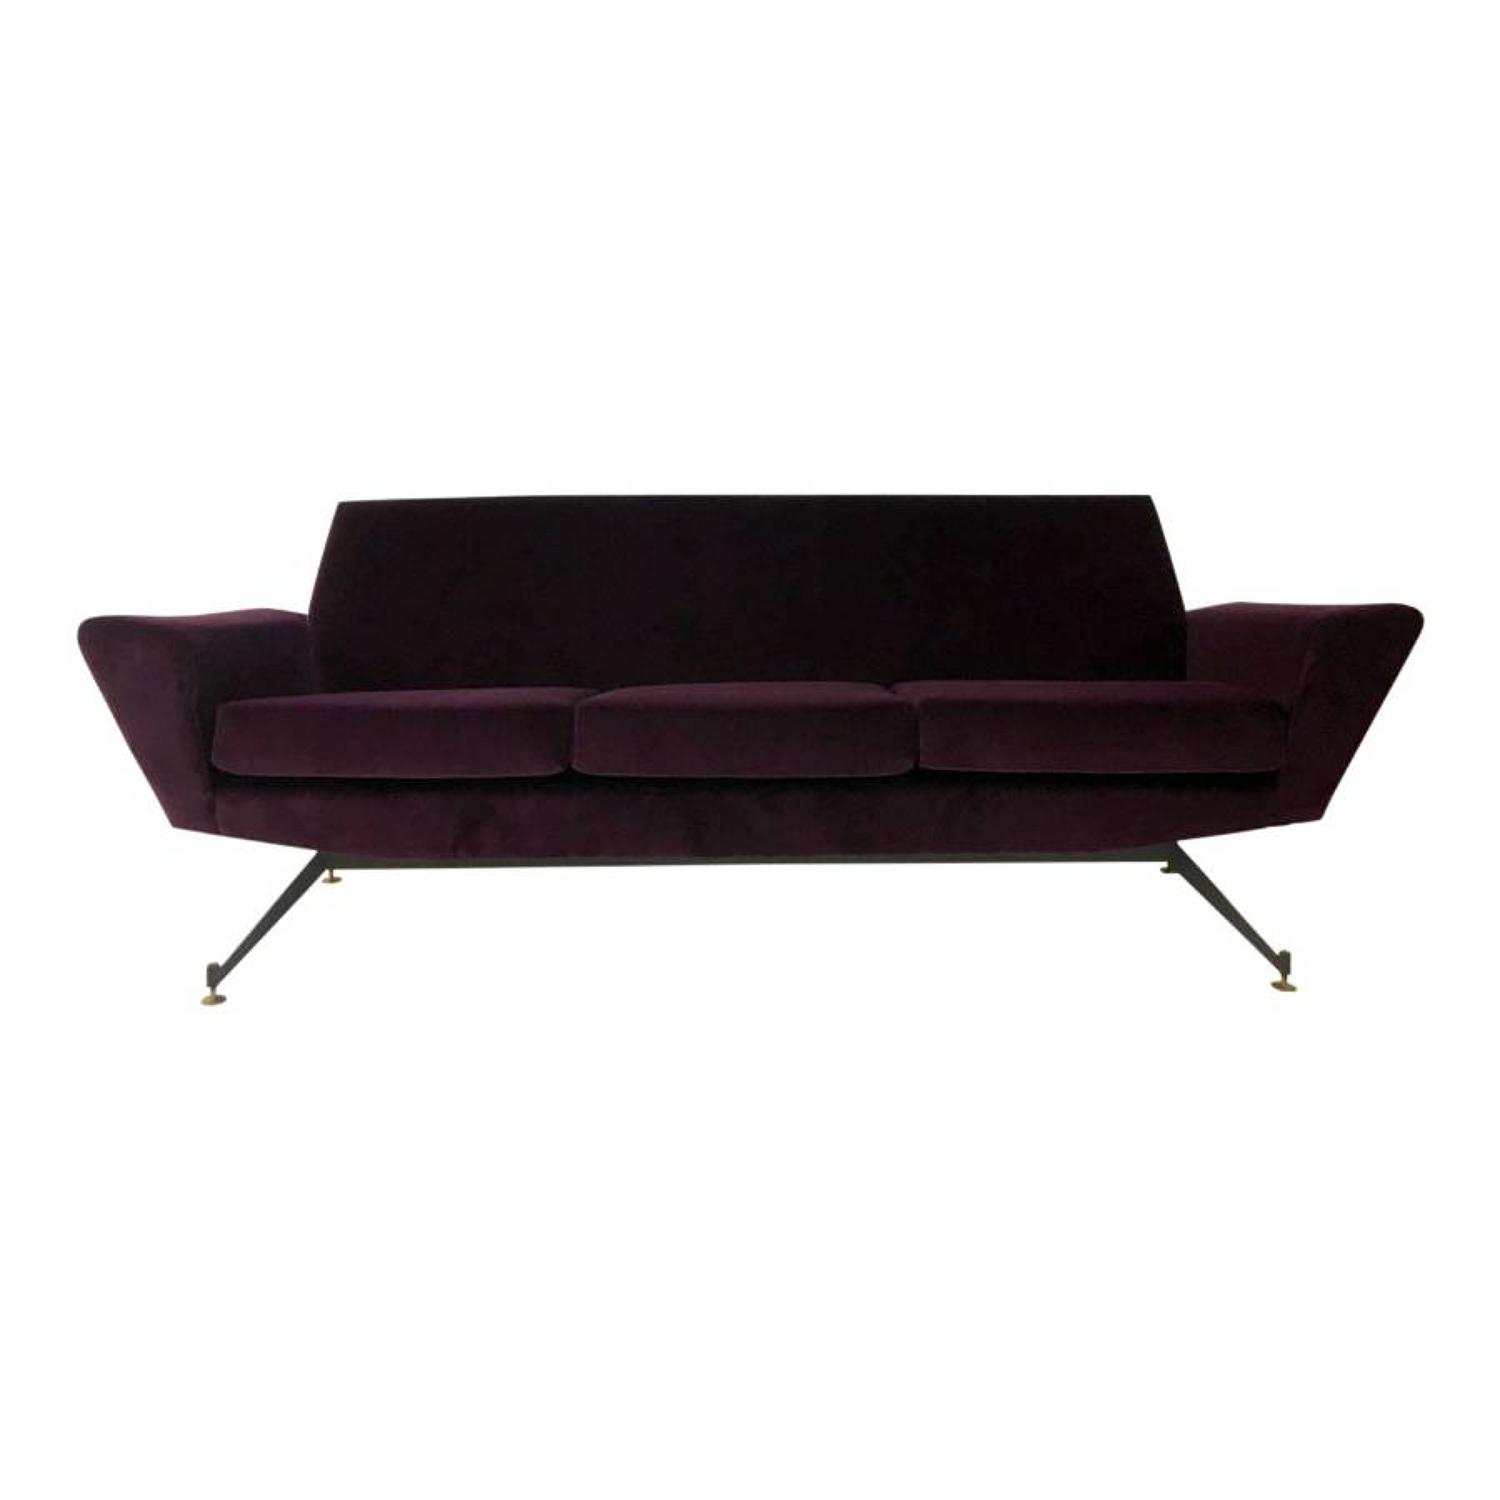 1960s Italian sofa in new plum velvet